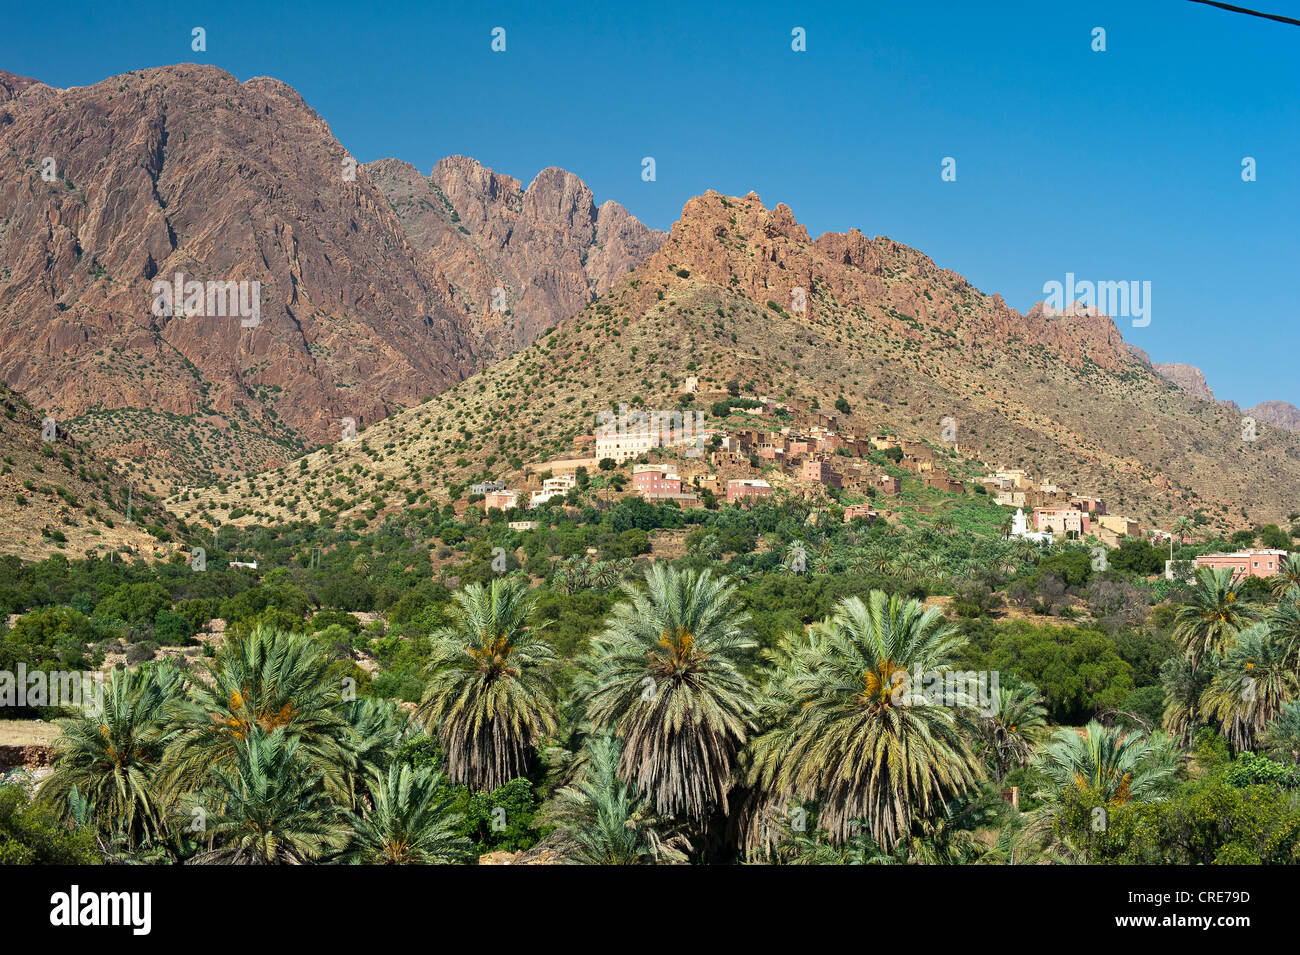 Paysage typique de montagne dans l'Anti-Atlas, village sur une colline avec des maisons berbères traditionnels Banque D'Images